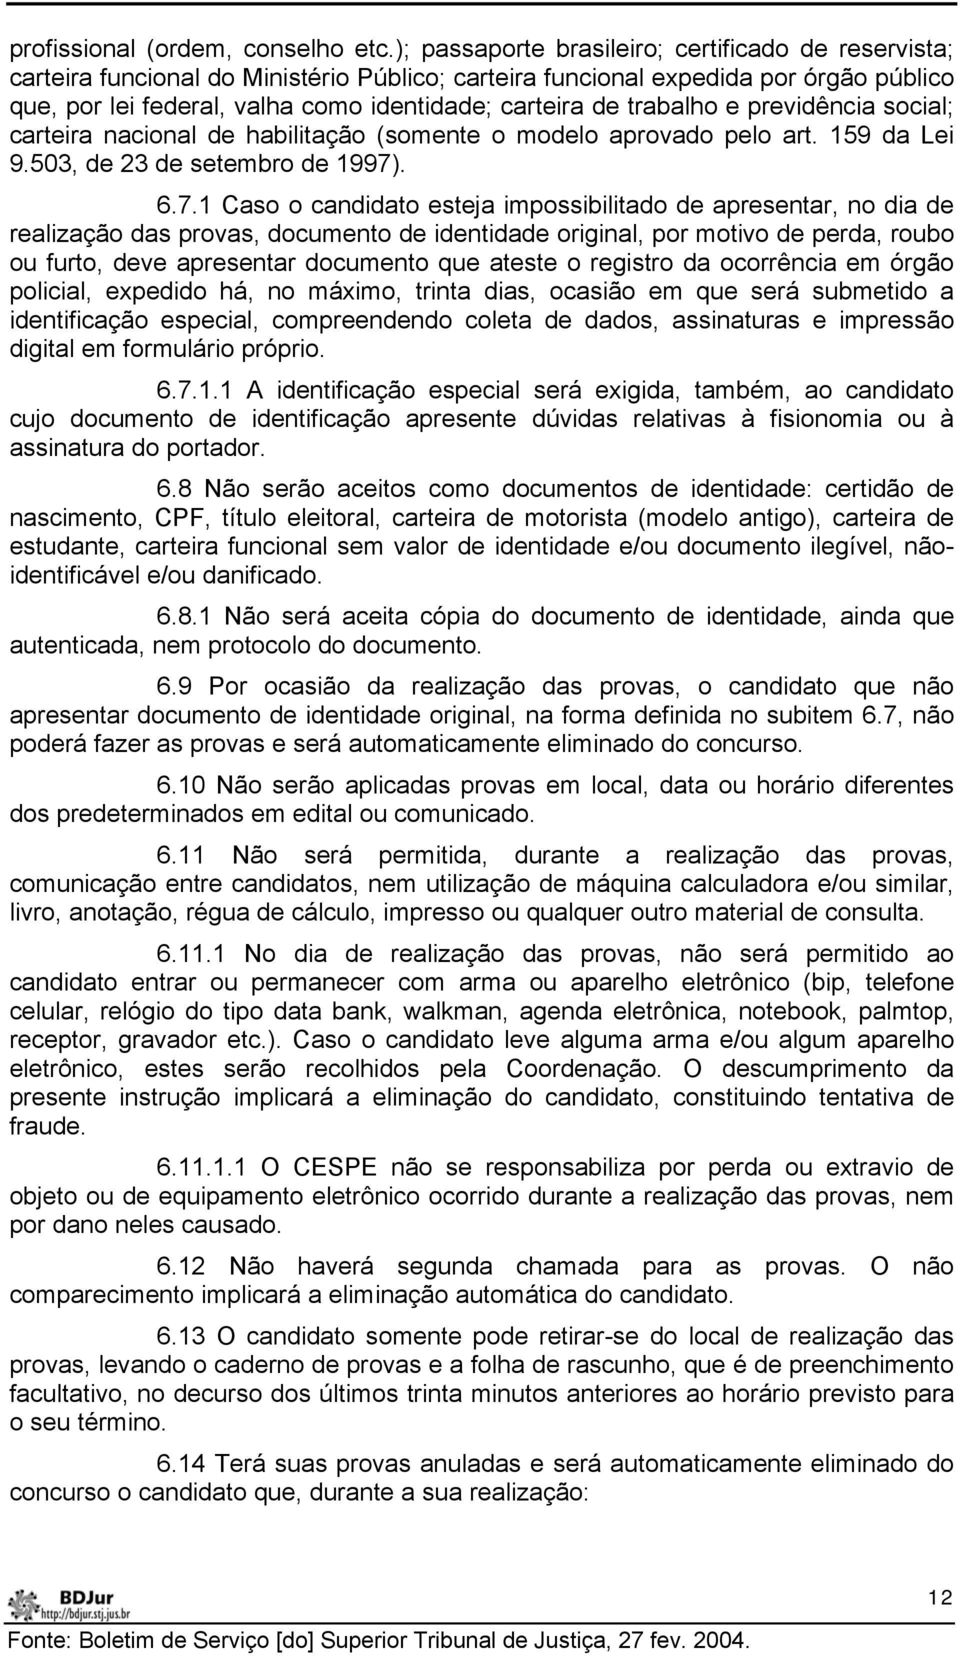 trabalho e previdência social; carteira nacional de habilitação (somente o modelo aprovado pelo art. 159 da Lei 9.503, de 23 de setembro de 1997)